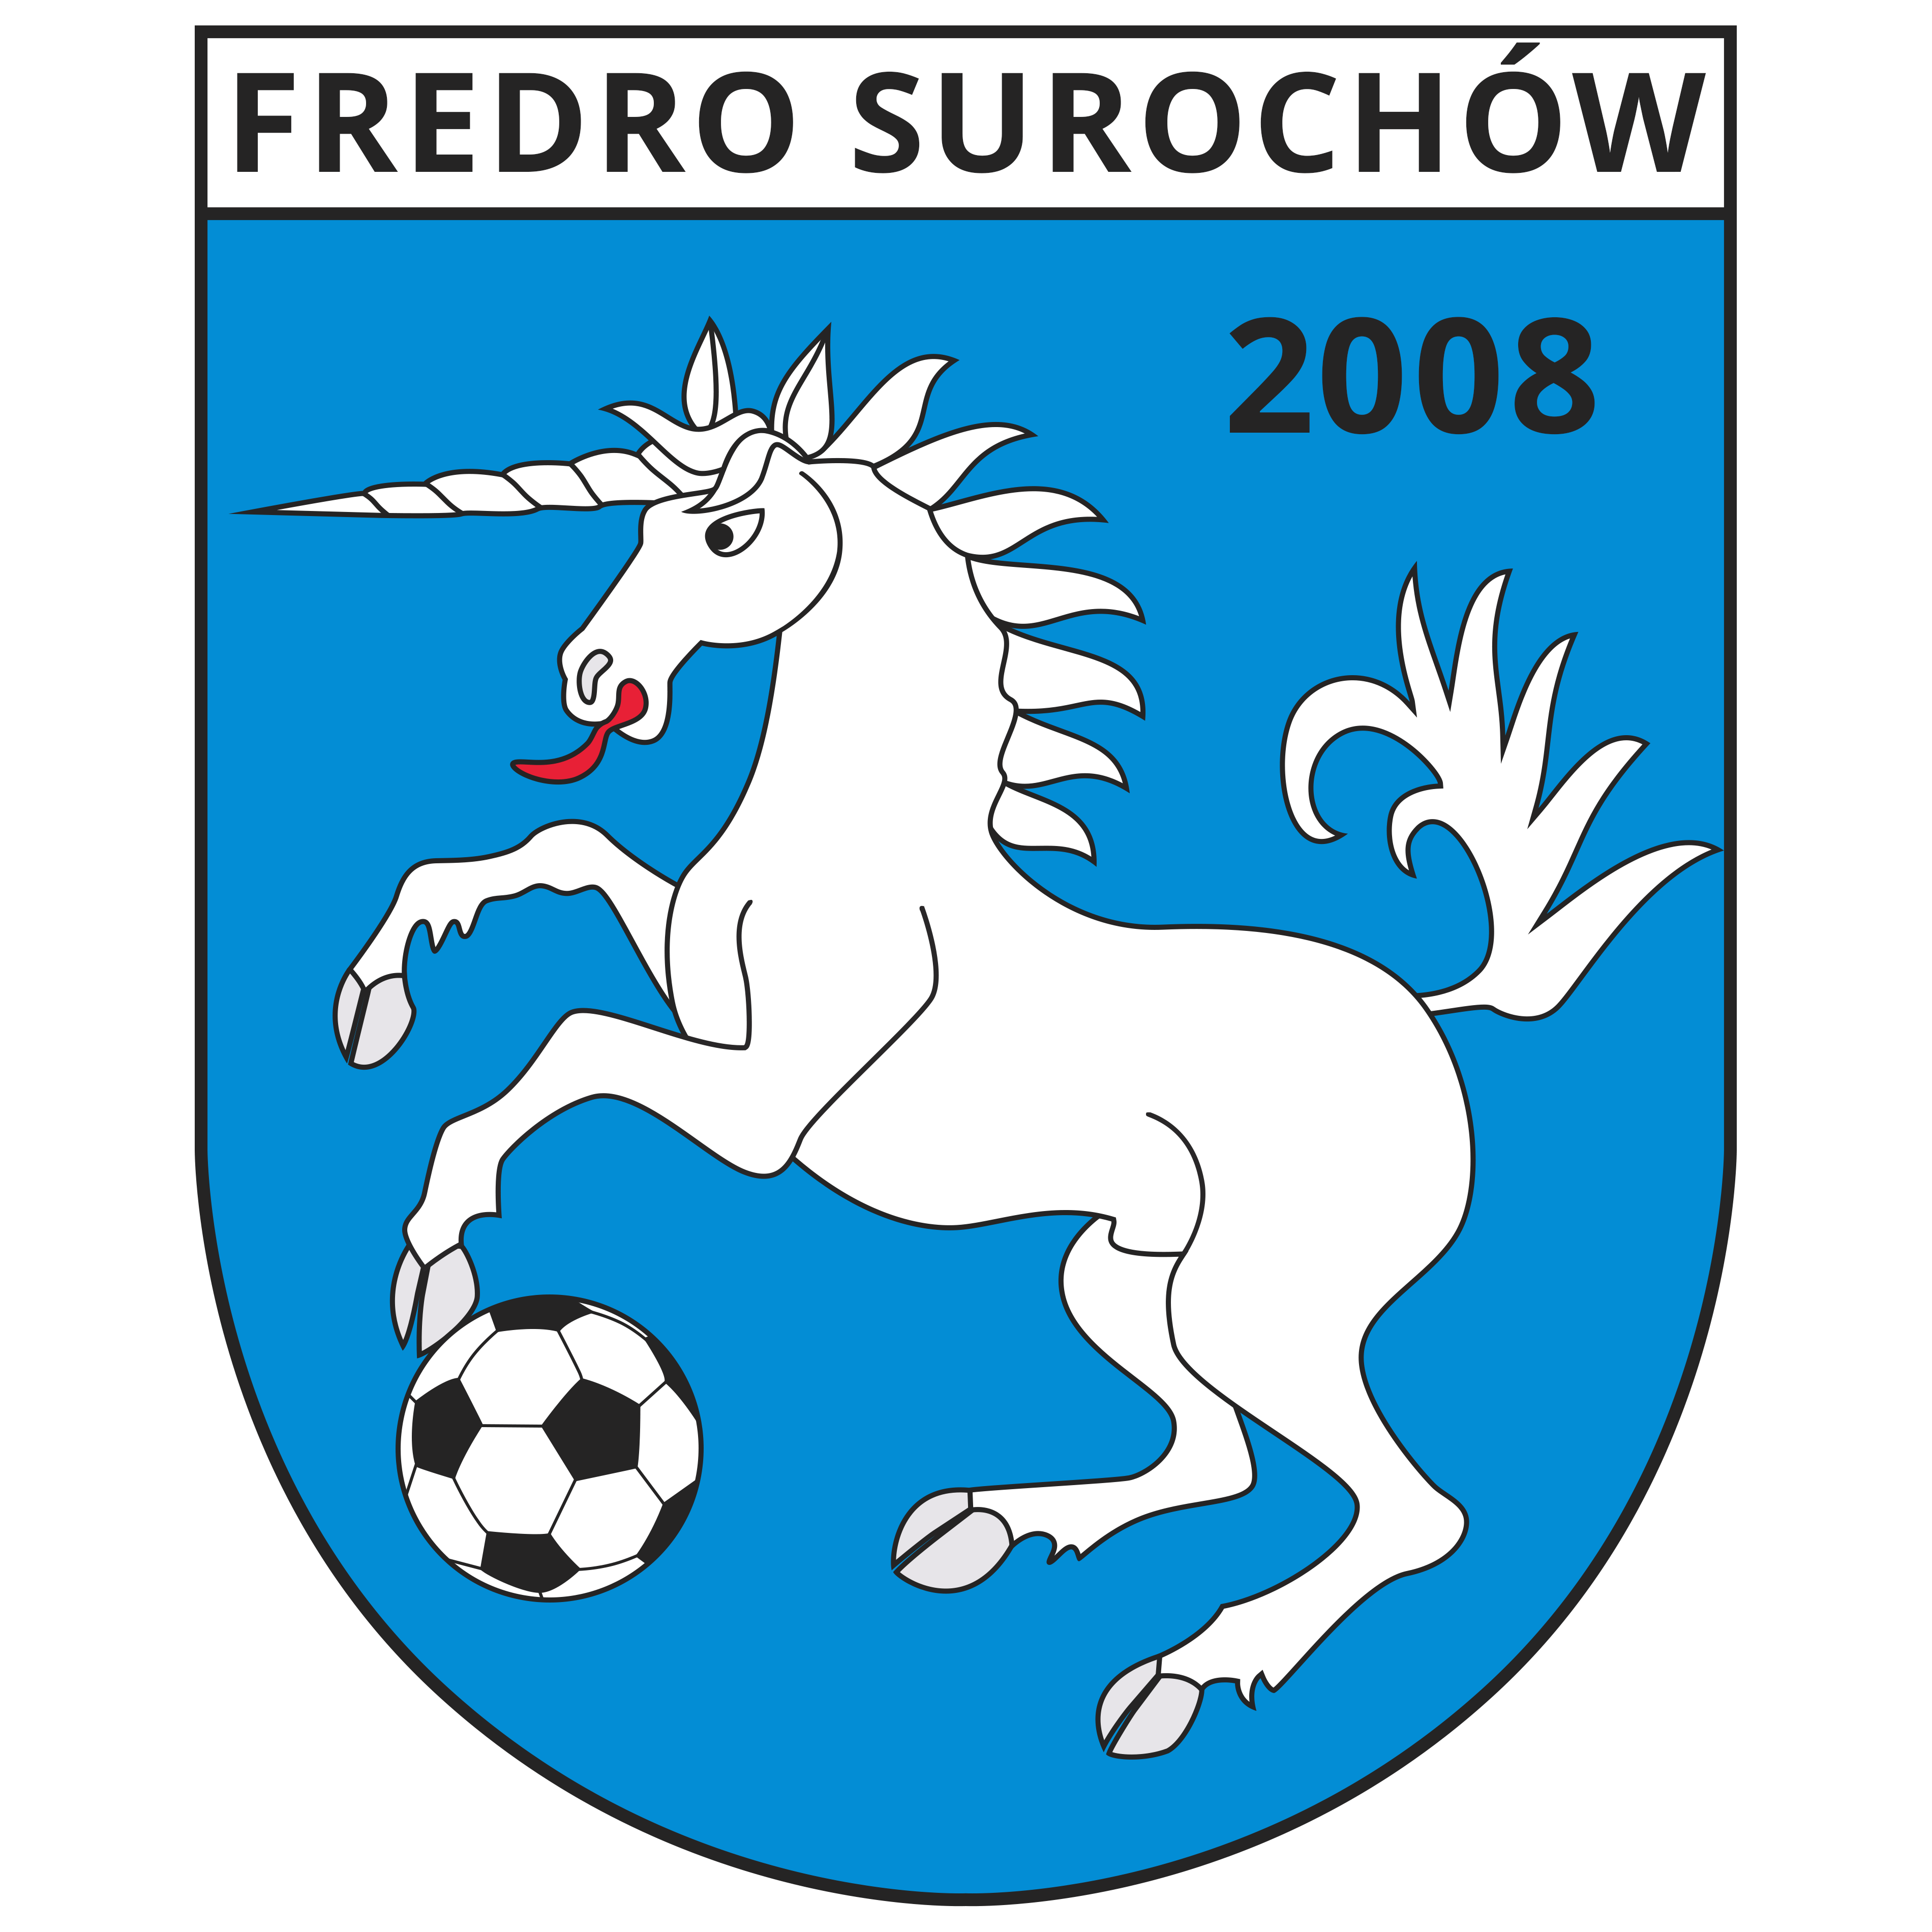 Fredro Surochów U19